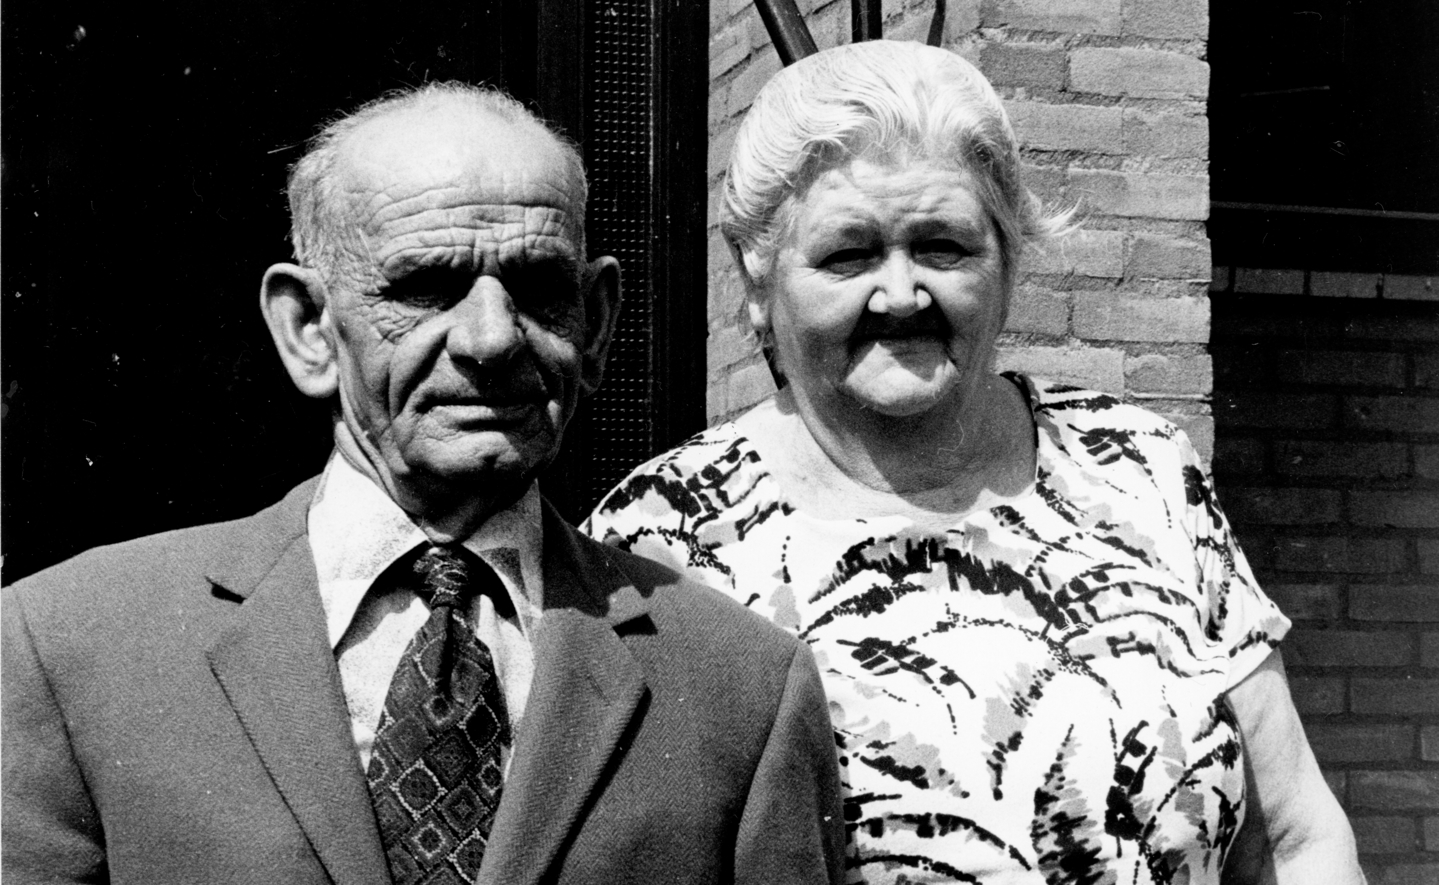 Sjef en Agnes van Schijndel-Verschuur uit Boxtel gaven elkaar op 5 juni 1928 het jawoord. 